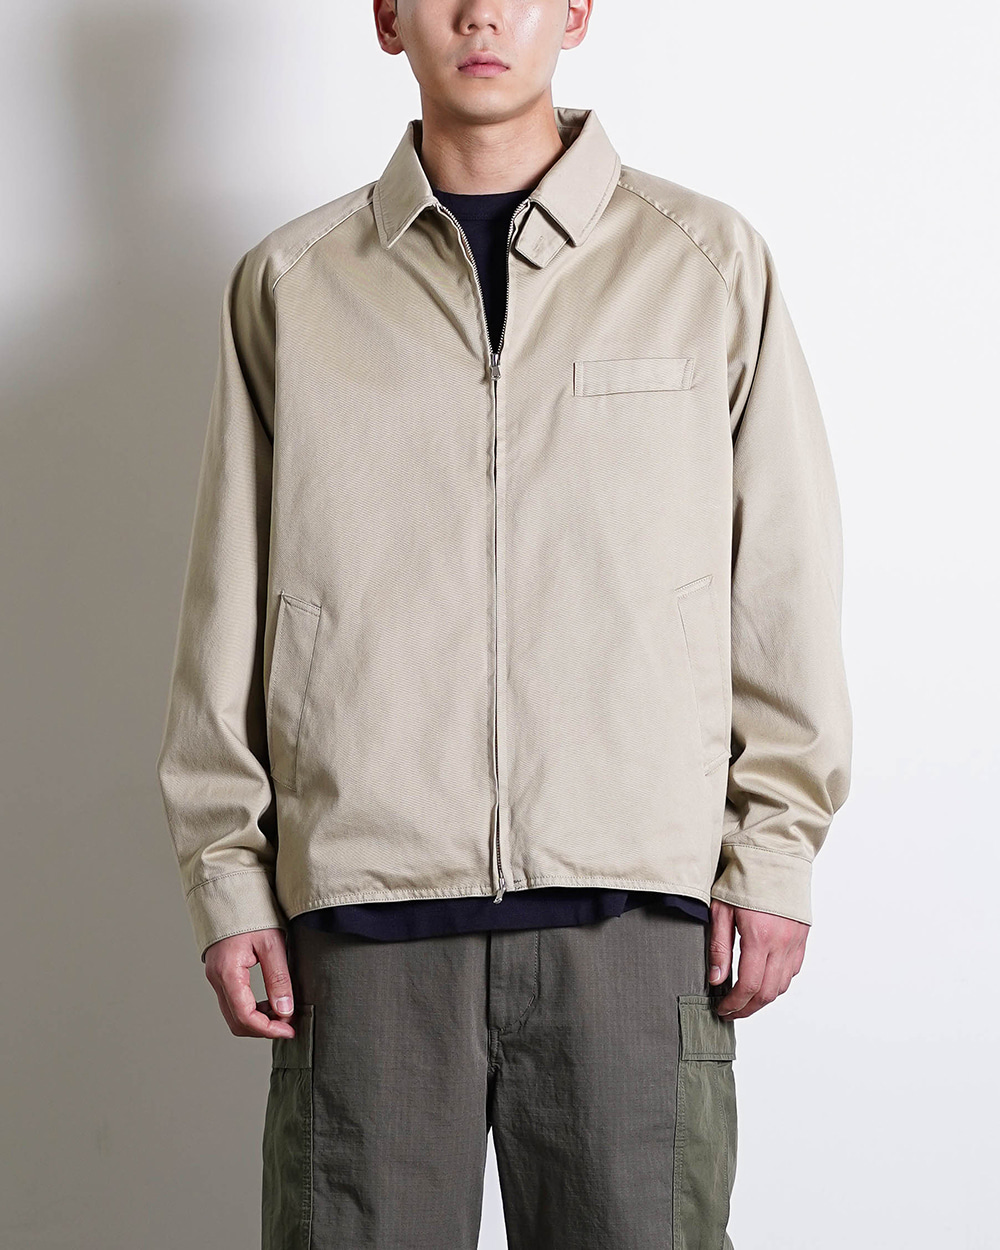 GORE-TEX INFINIUM Chino Crew Jacket (Khaki)